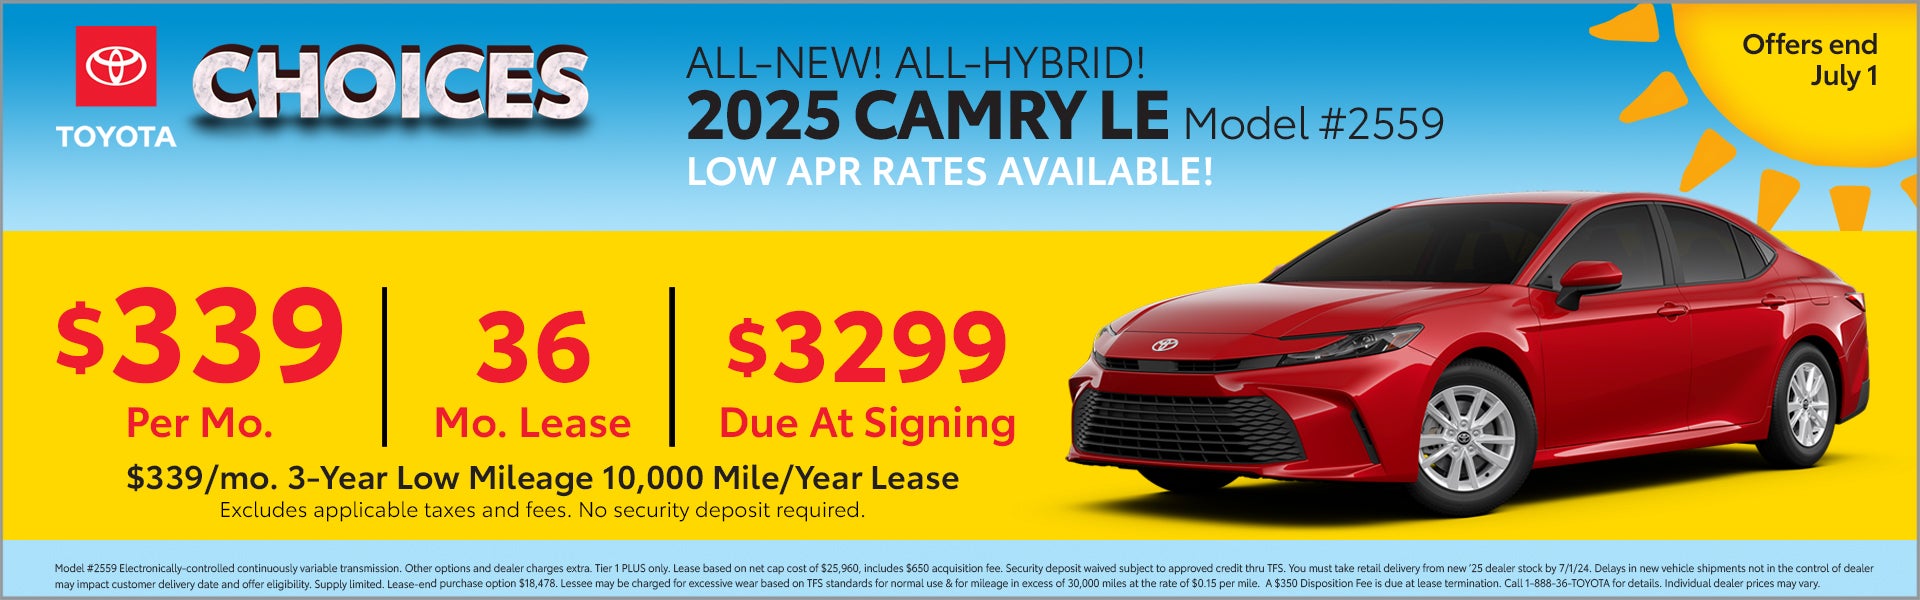 2025 Camry Hybrid Offer